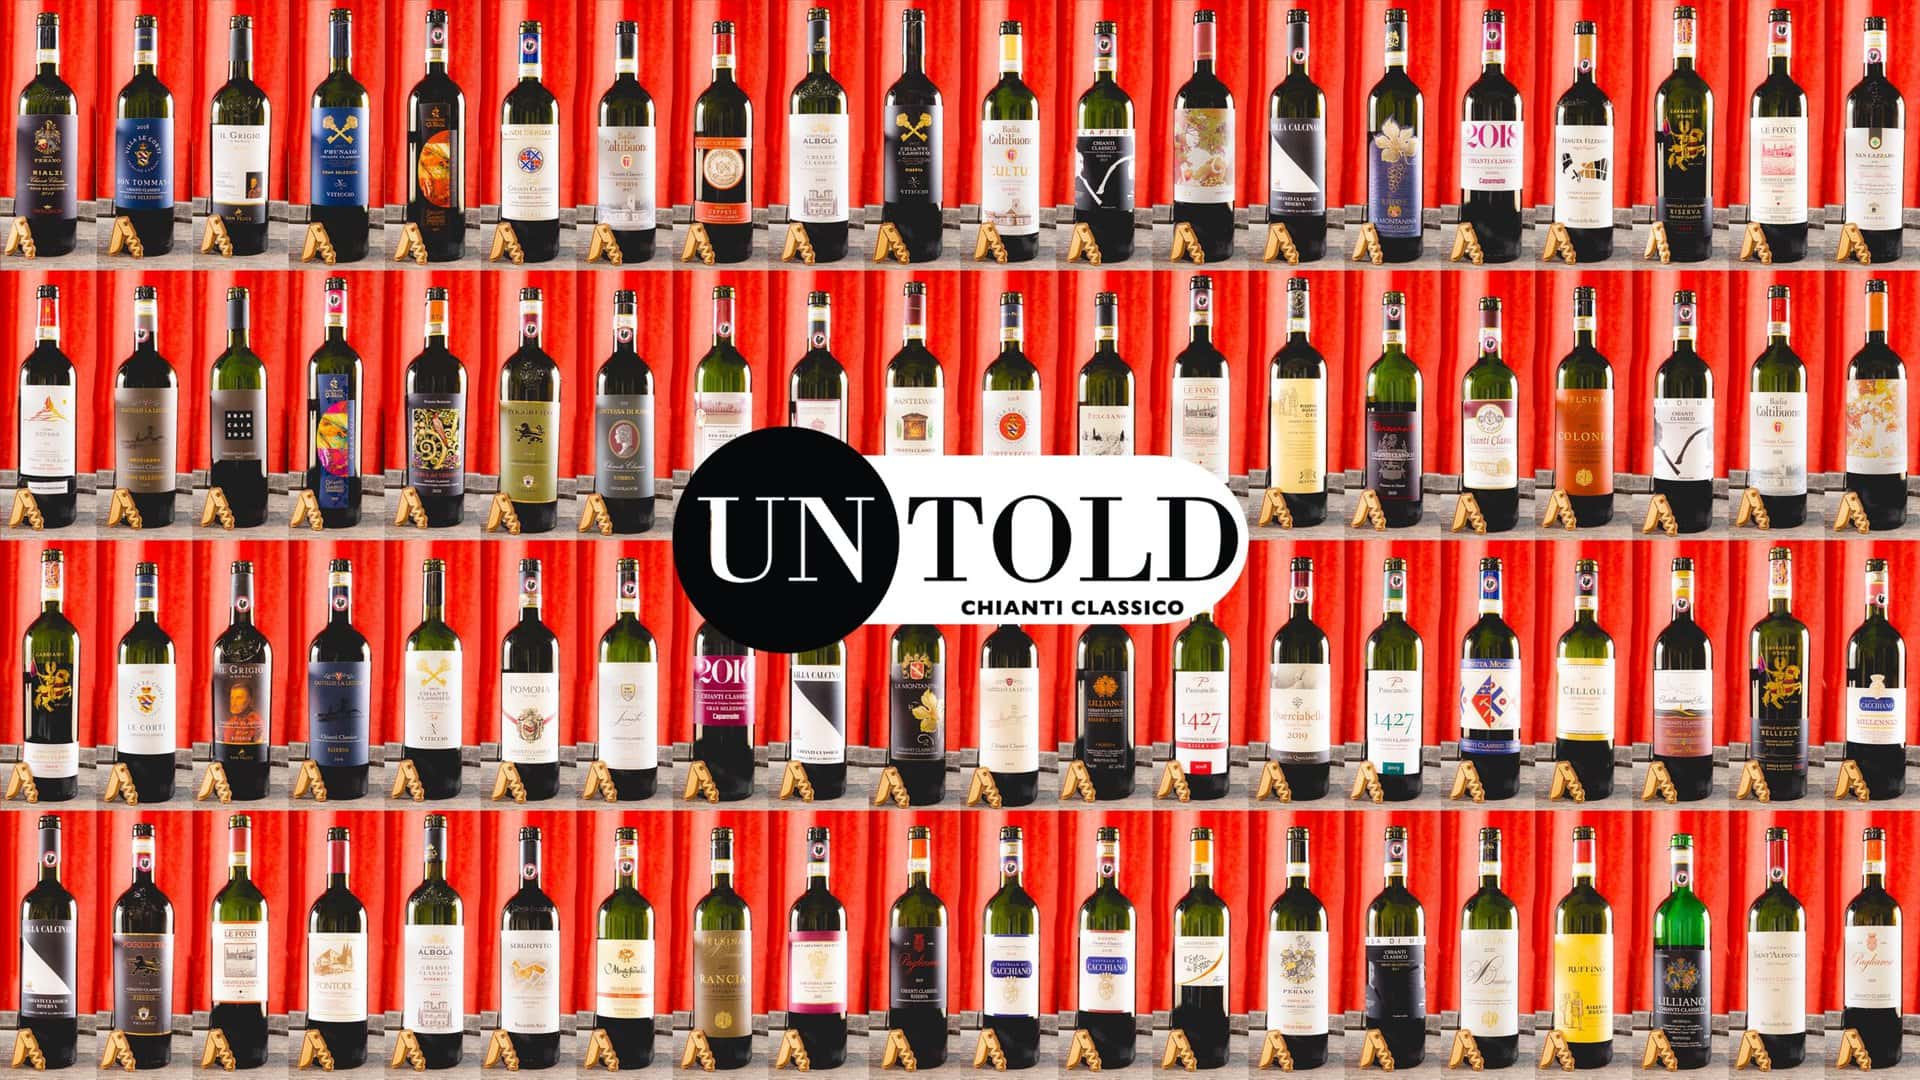 Tutti i vini di Chianti Classico Untold